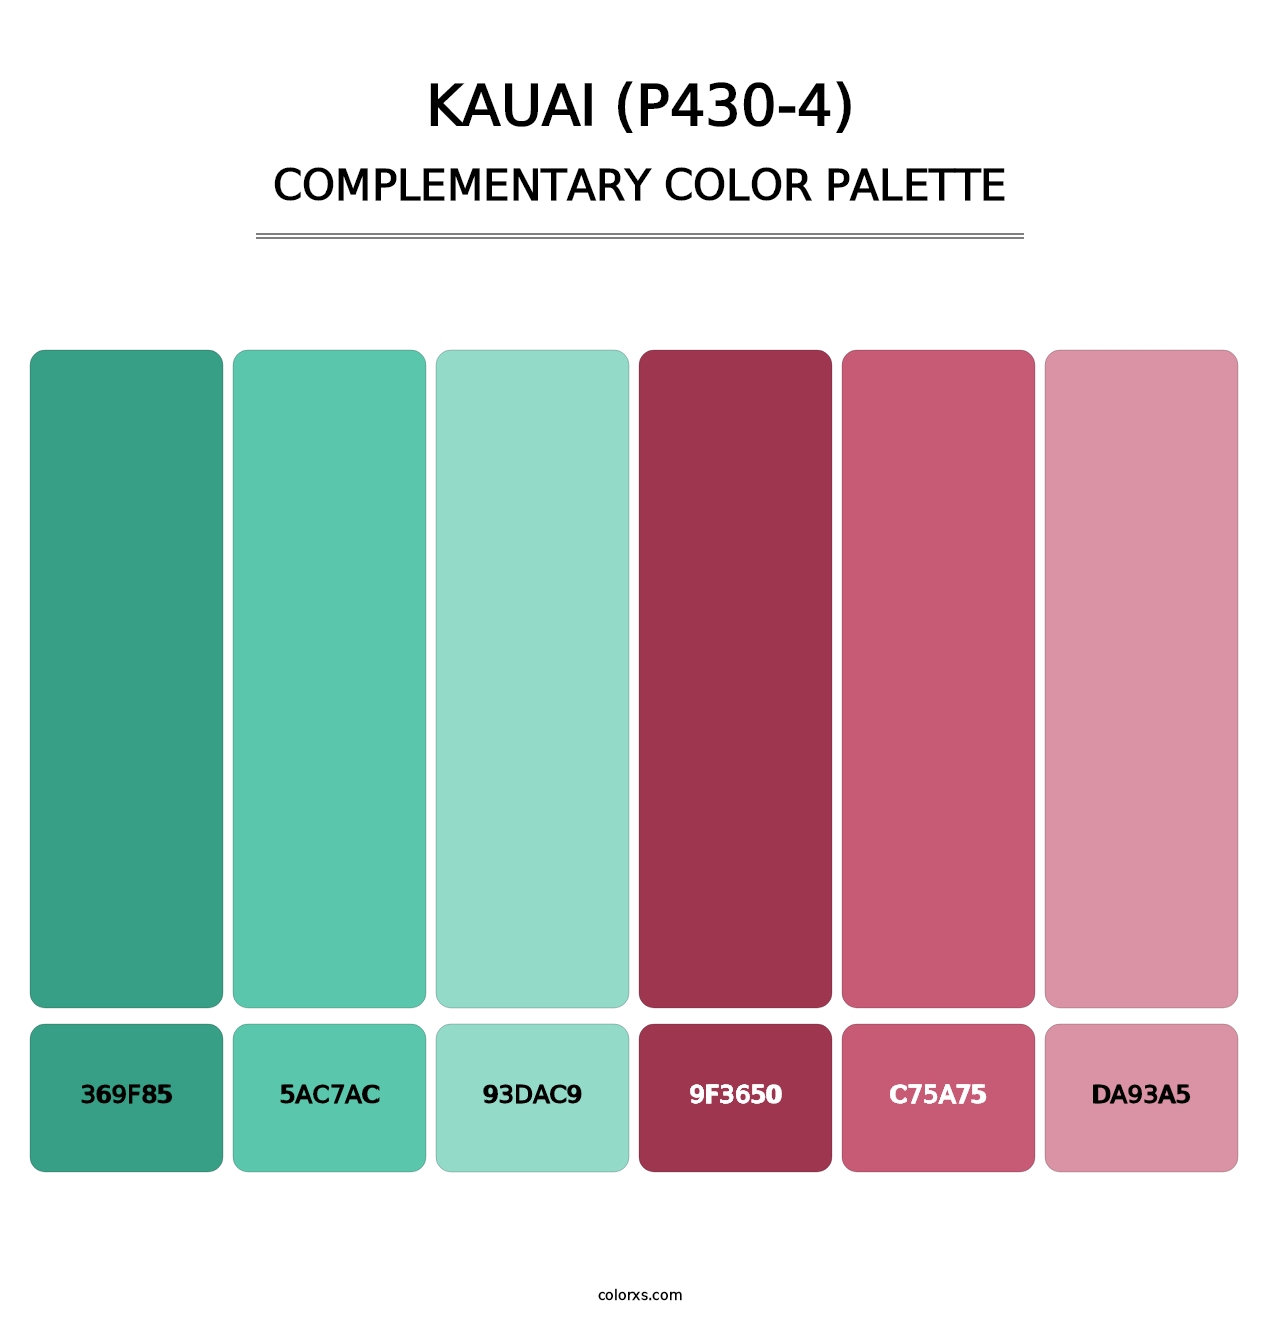 Kauai (P430-4) - Complementary Color Palette